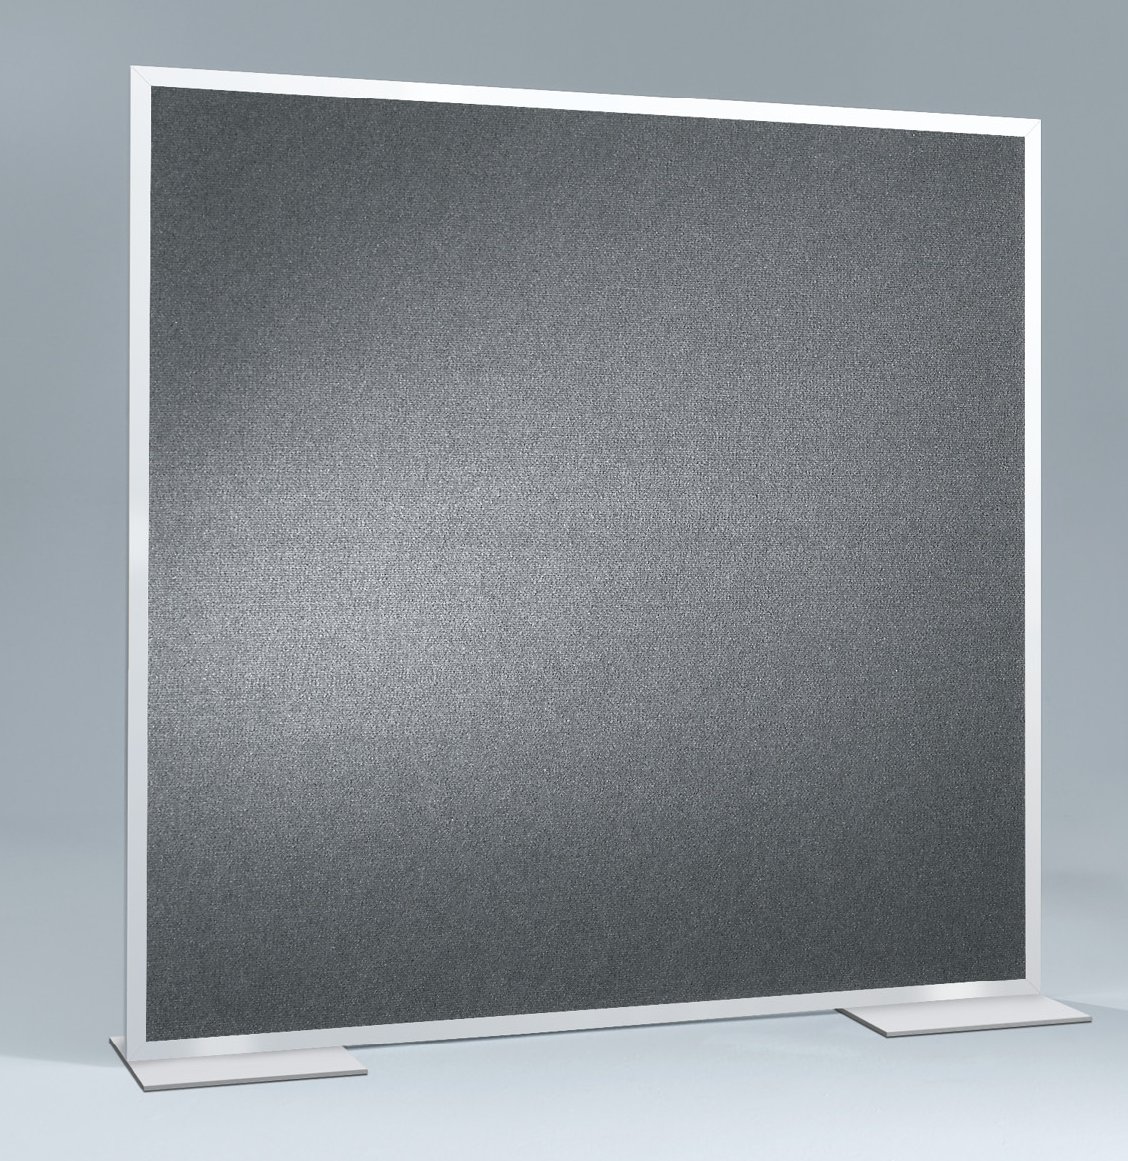 Pinboard als flexibler Raumteiler / Sichtschutzwand mit Klettstoffbezug